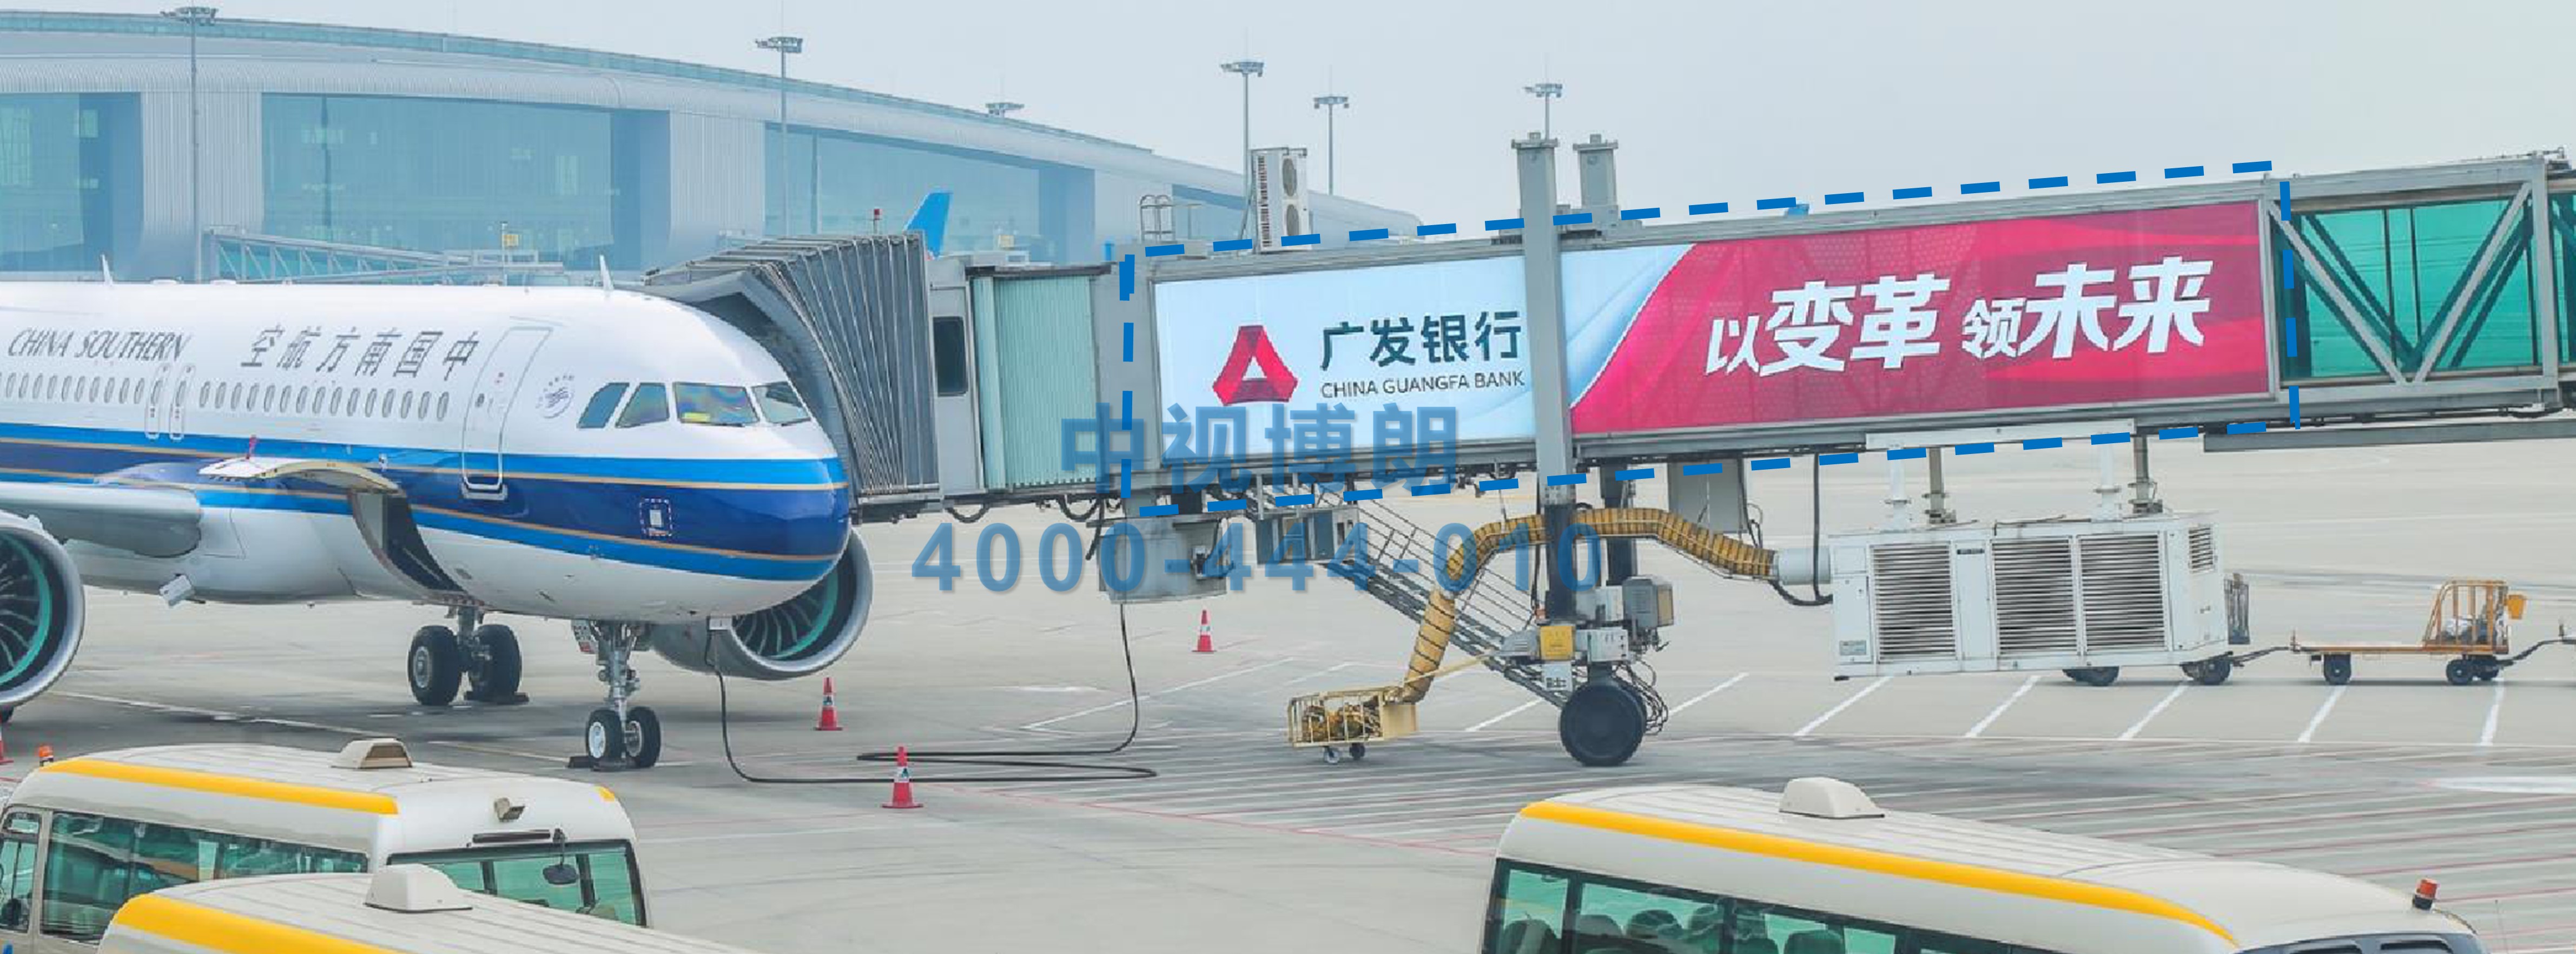 北京首都机场广告-T2出发及到达外廊桥看板套装